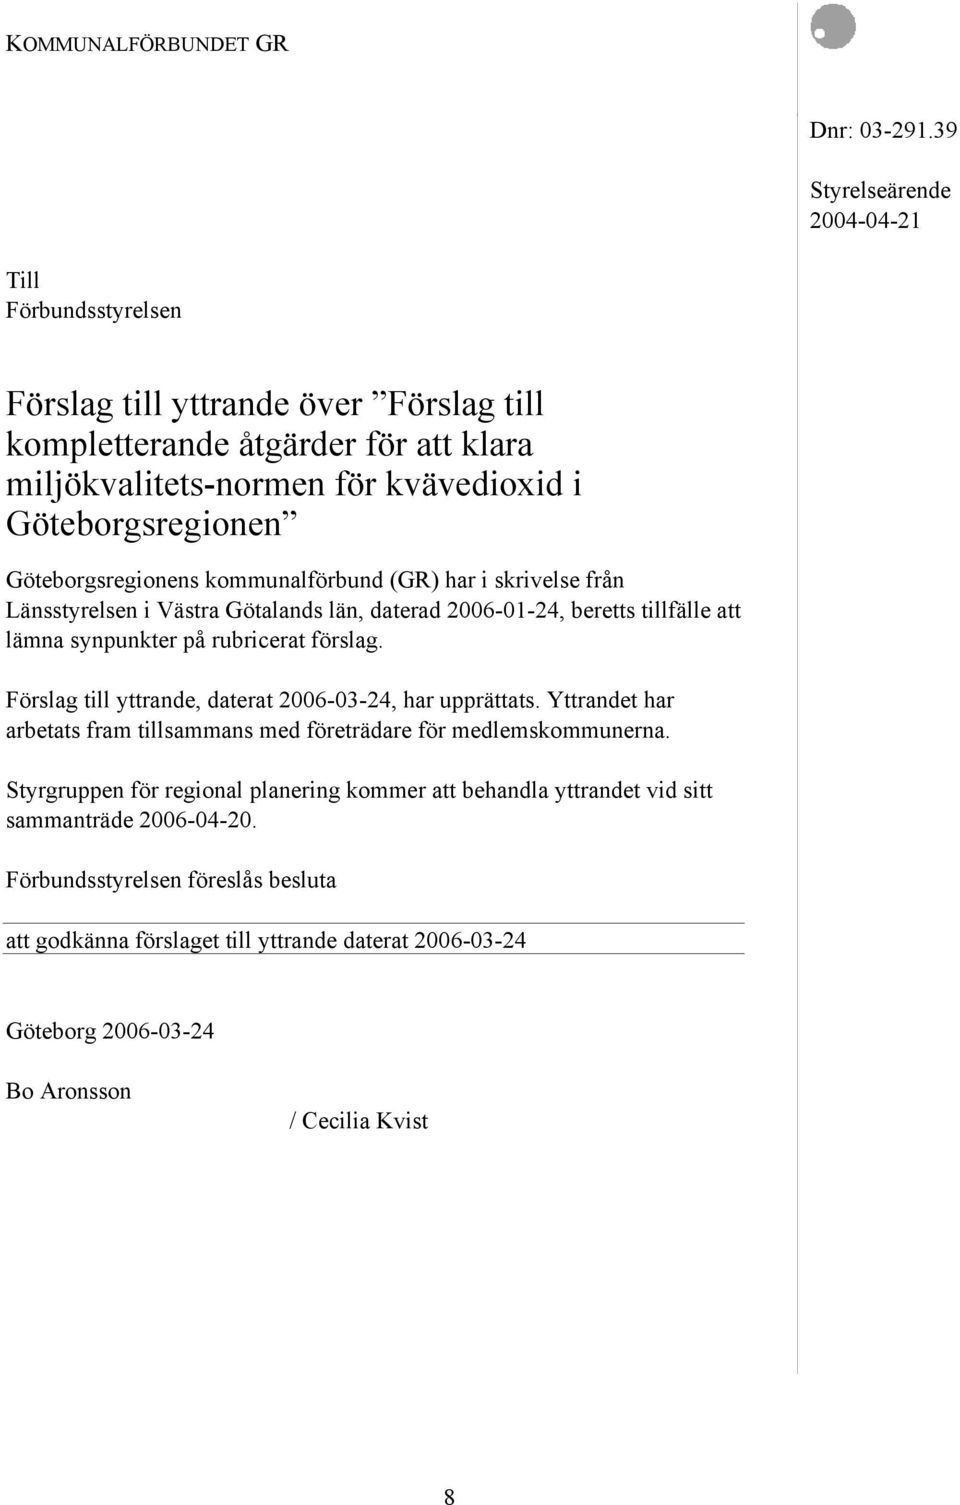 Göteborgsregionens kommunalförbund (GR) har i skrivelse från Länsstyrelsen i Västra Götalands län, daterad 2006-01-24, beretts tillfälle att lämna synpunkter på rubricerat förslag.